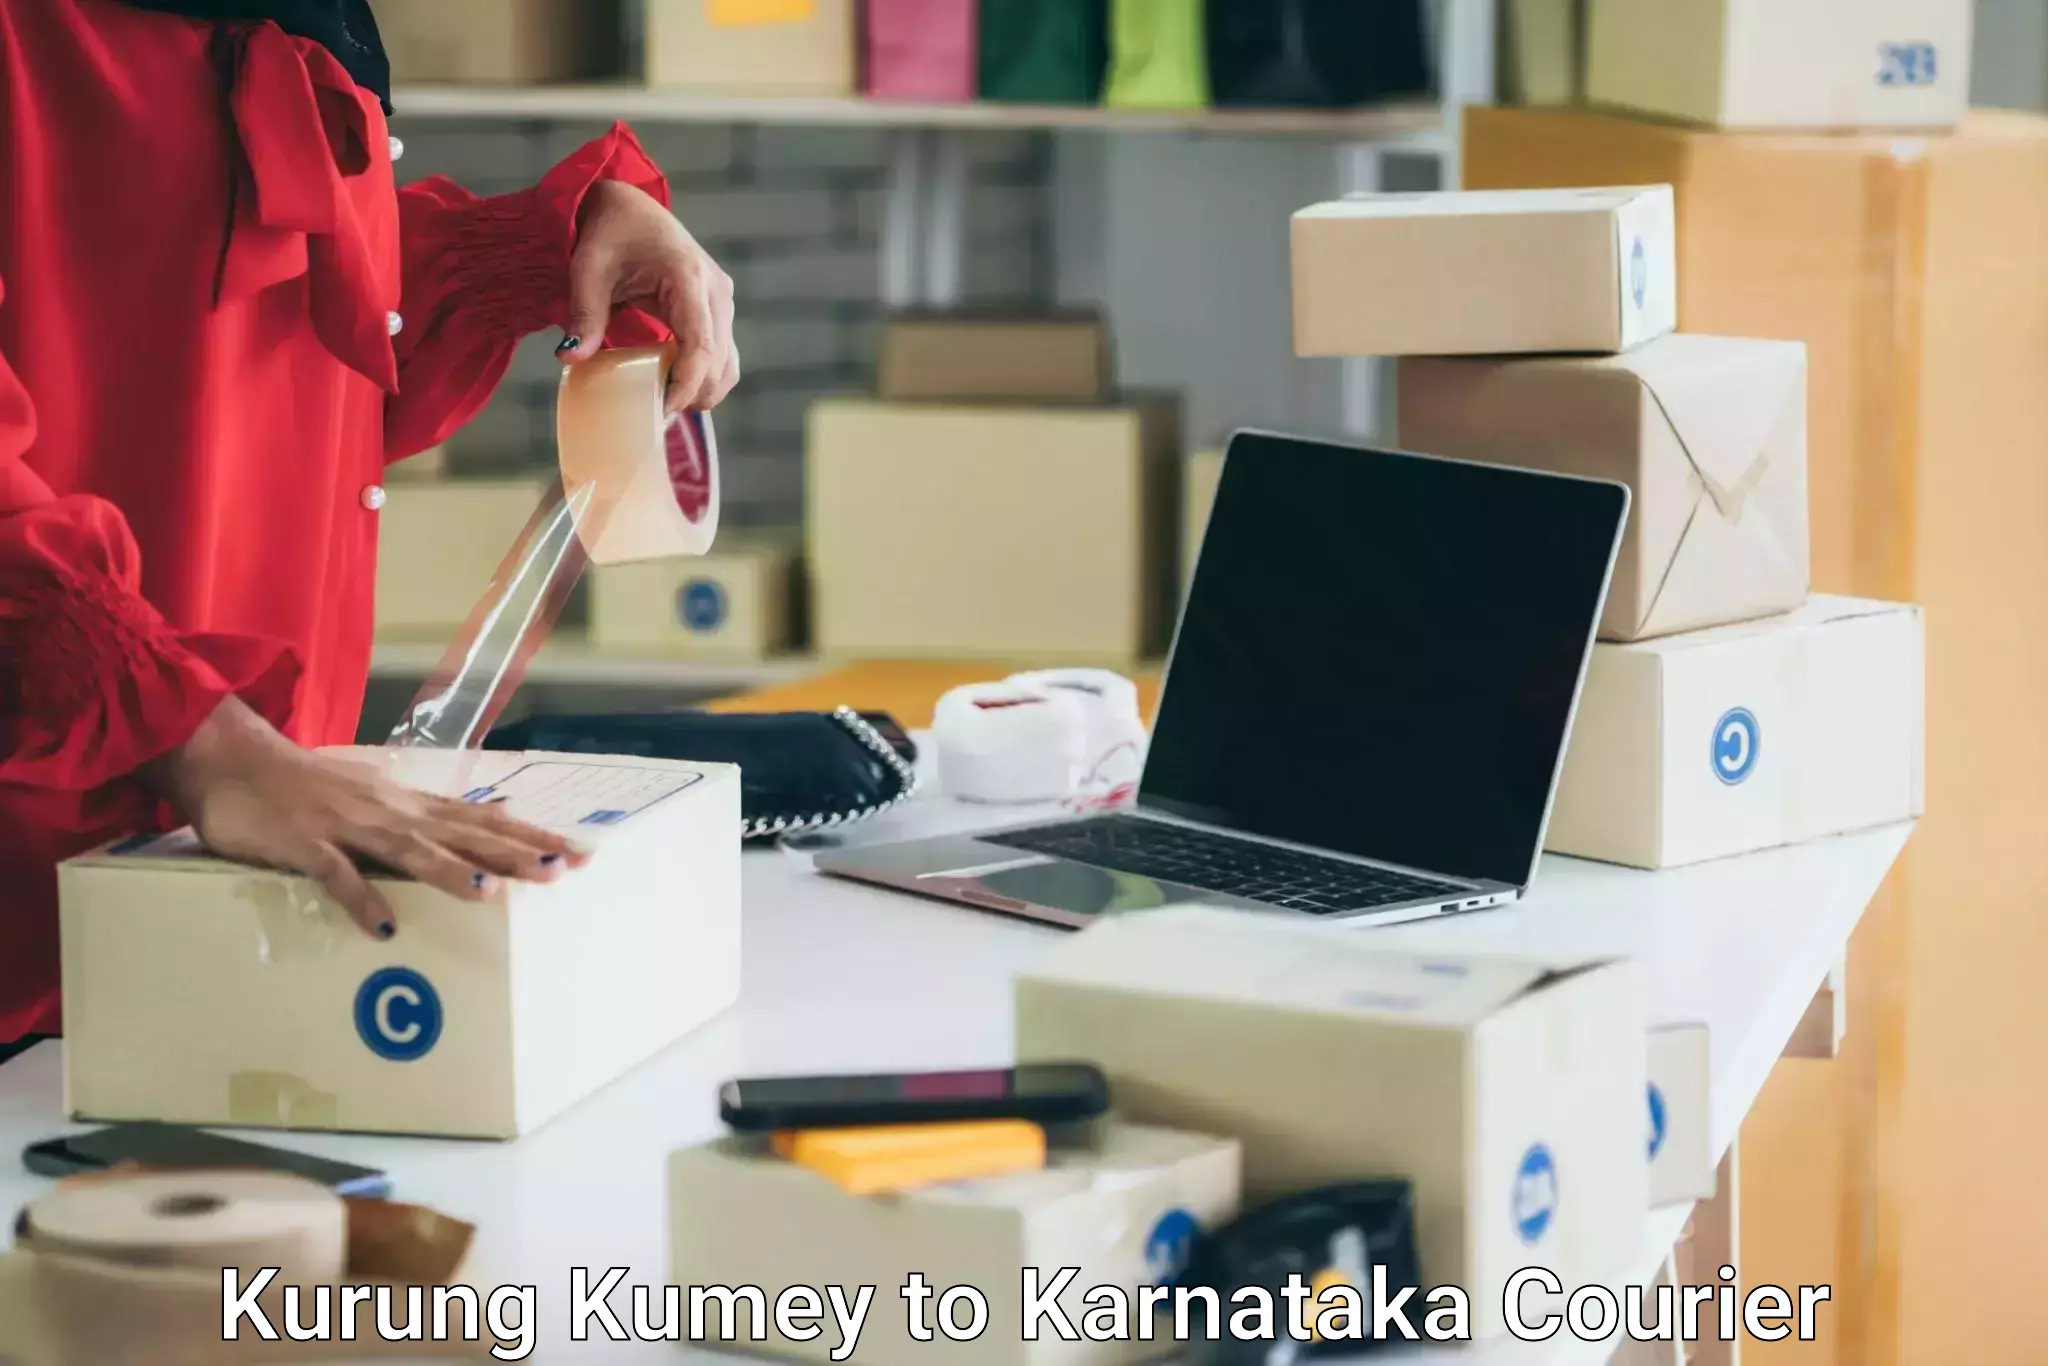 Furniture relocation experts Kurung Kumey to Karnataka